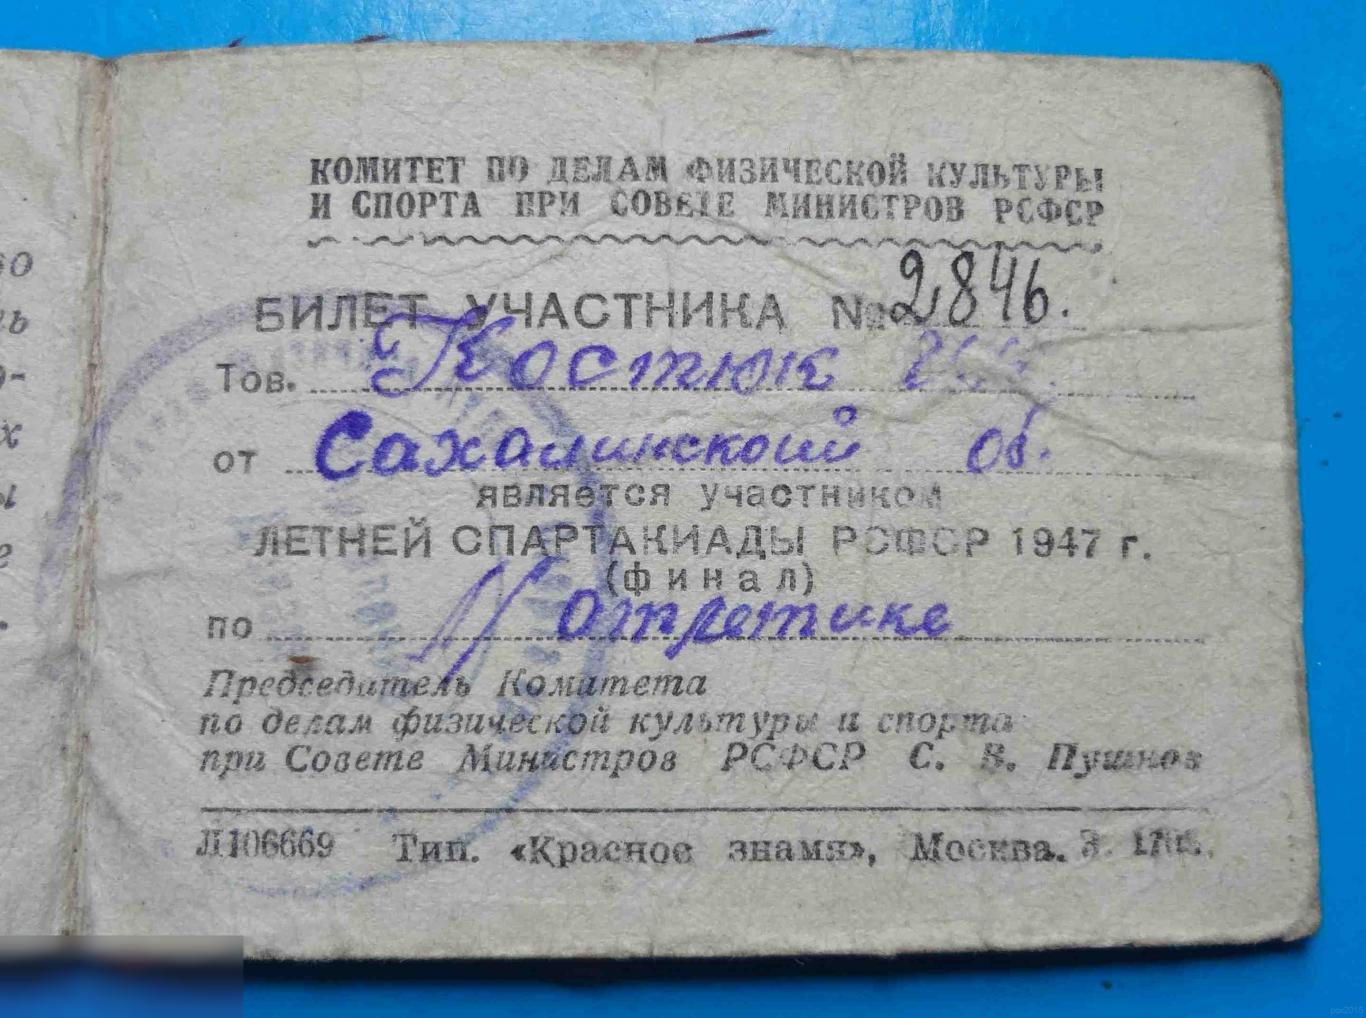 Билет участника Летней спартакиады РСФСР 1947 легкая атлетика док 2